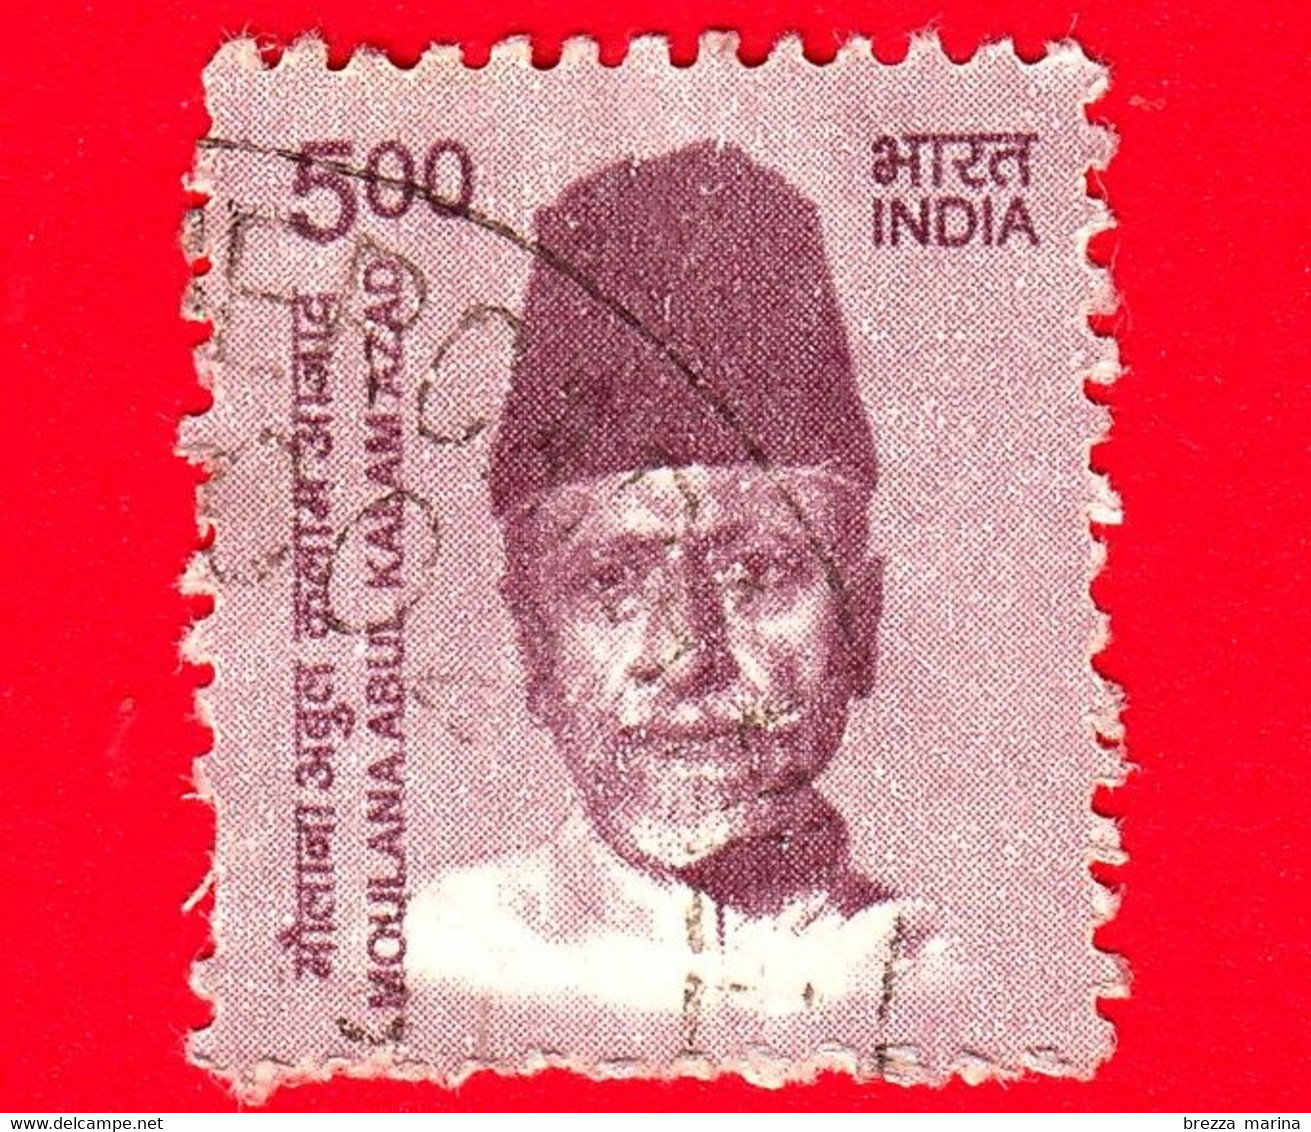 INDIA  - Usato - 2015 - Creatori Dell'India - Moulana Abul Kalam Azad (1888-1958), Politico E Scrittore - 5 - Usati